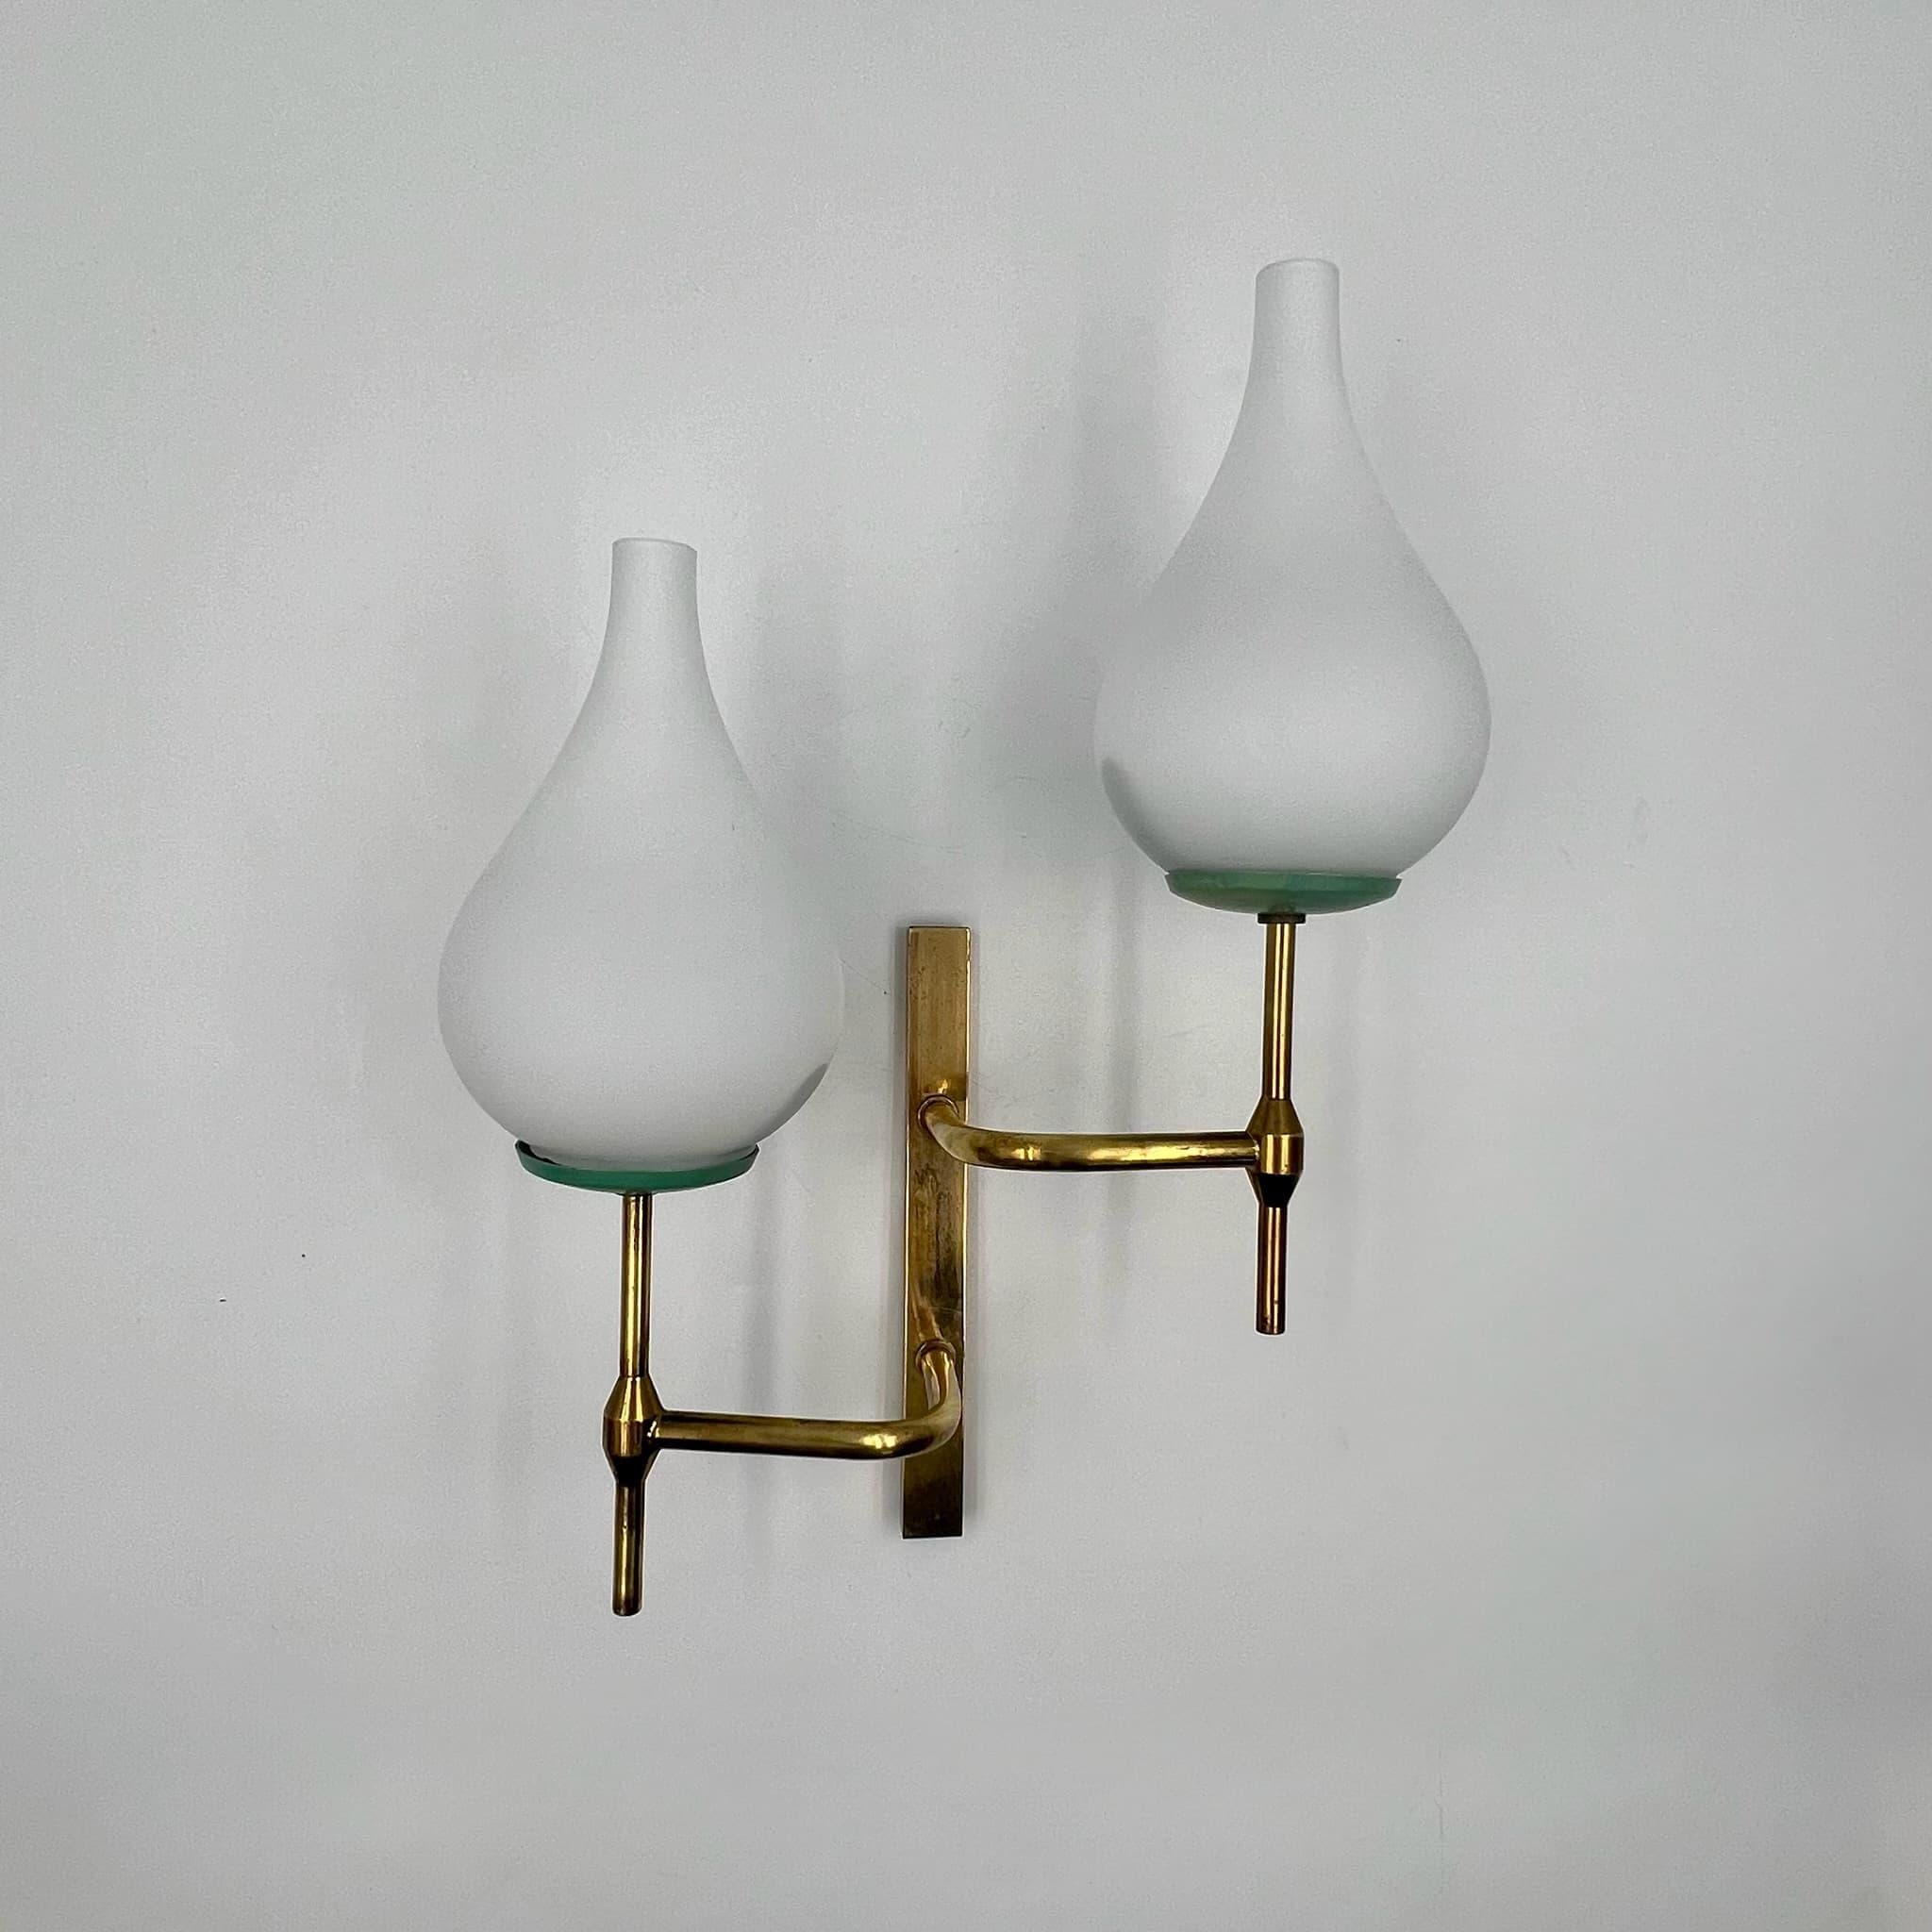 Illuminez votre espace avec le charme du milieu du siècle grâce à cette exquise lampe vintage des années 50 inspirée de Stilnovo et fabriquée en Italie. Réalisée en laiton et en verre opalin, cette applique incarne la sophistication et le